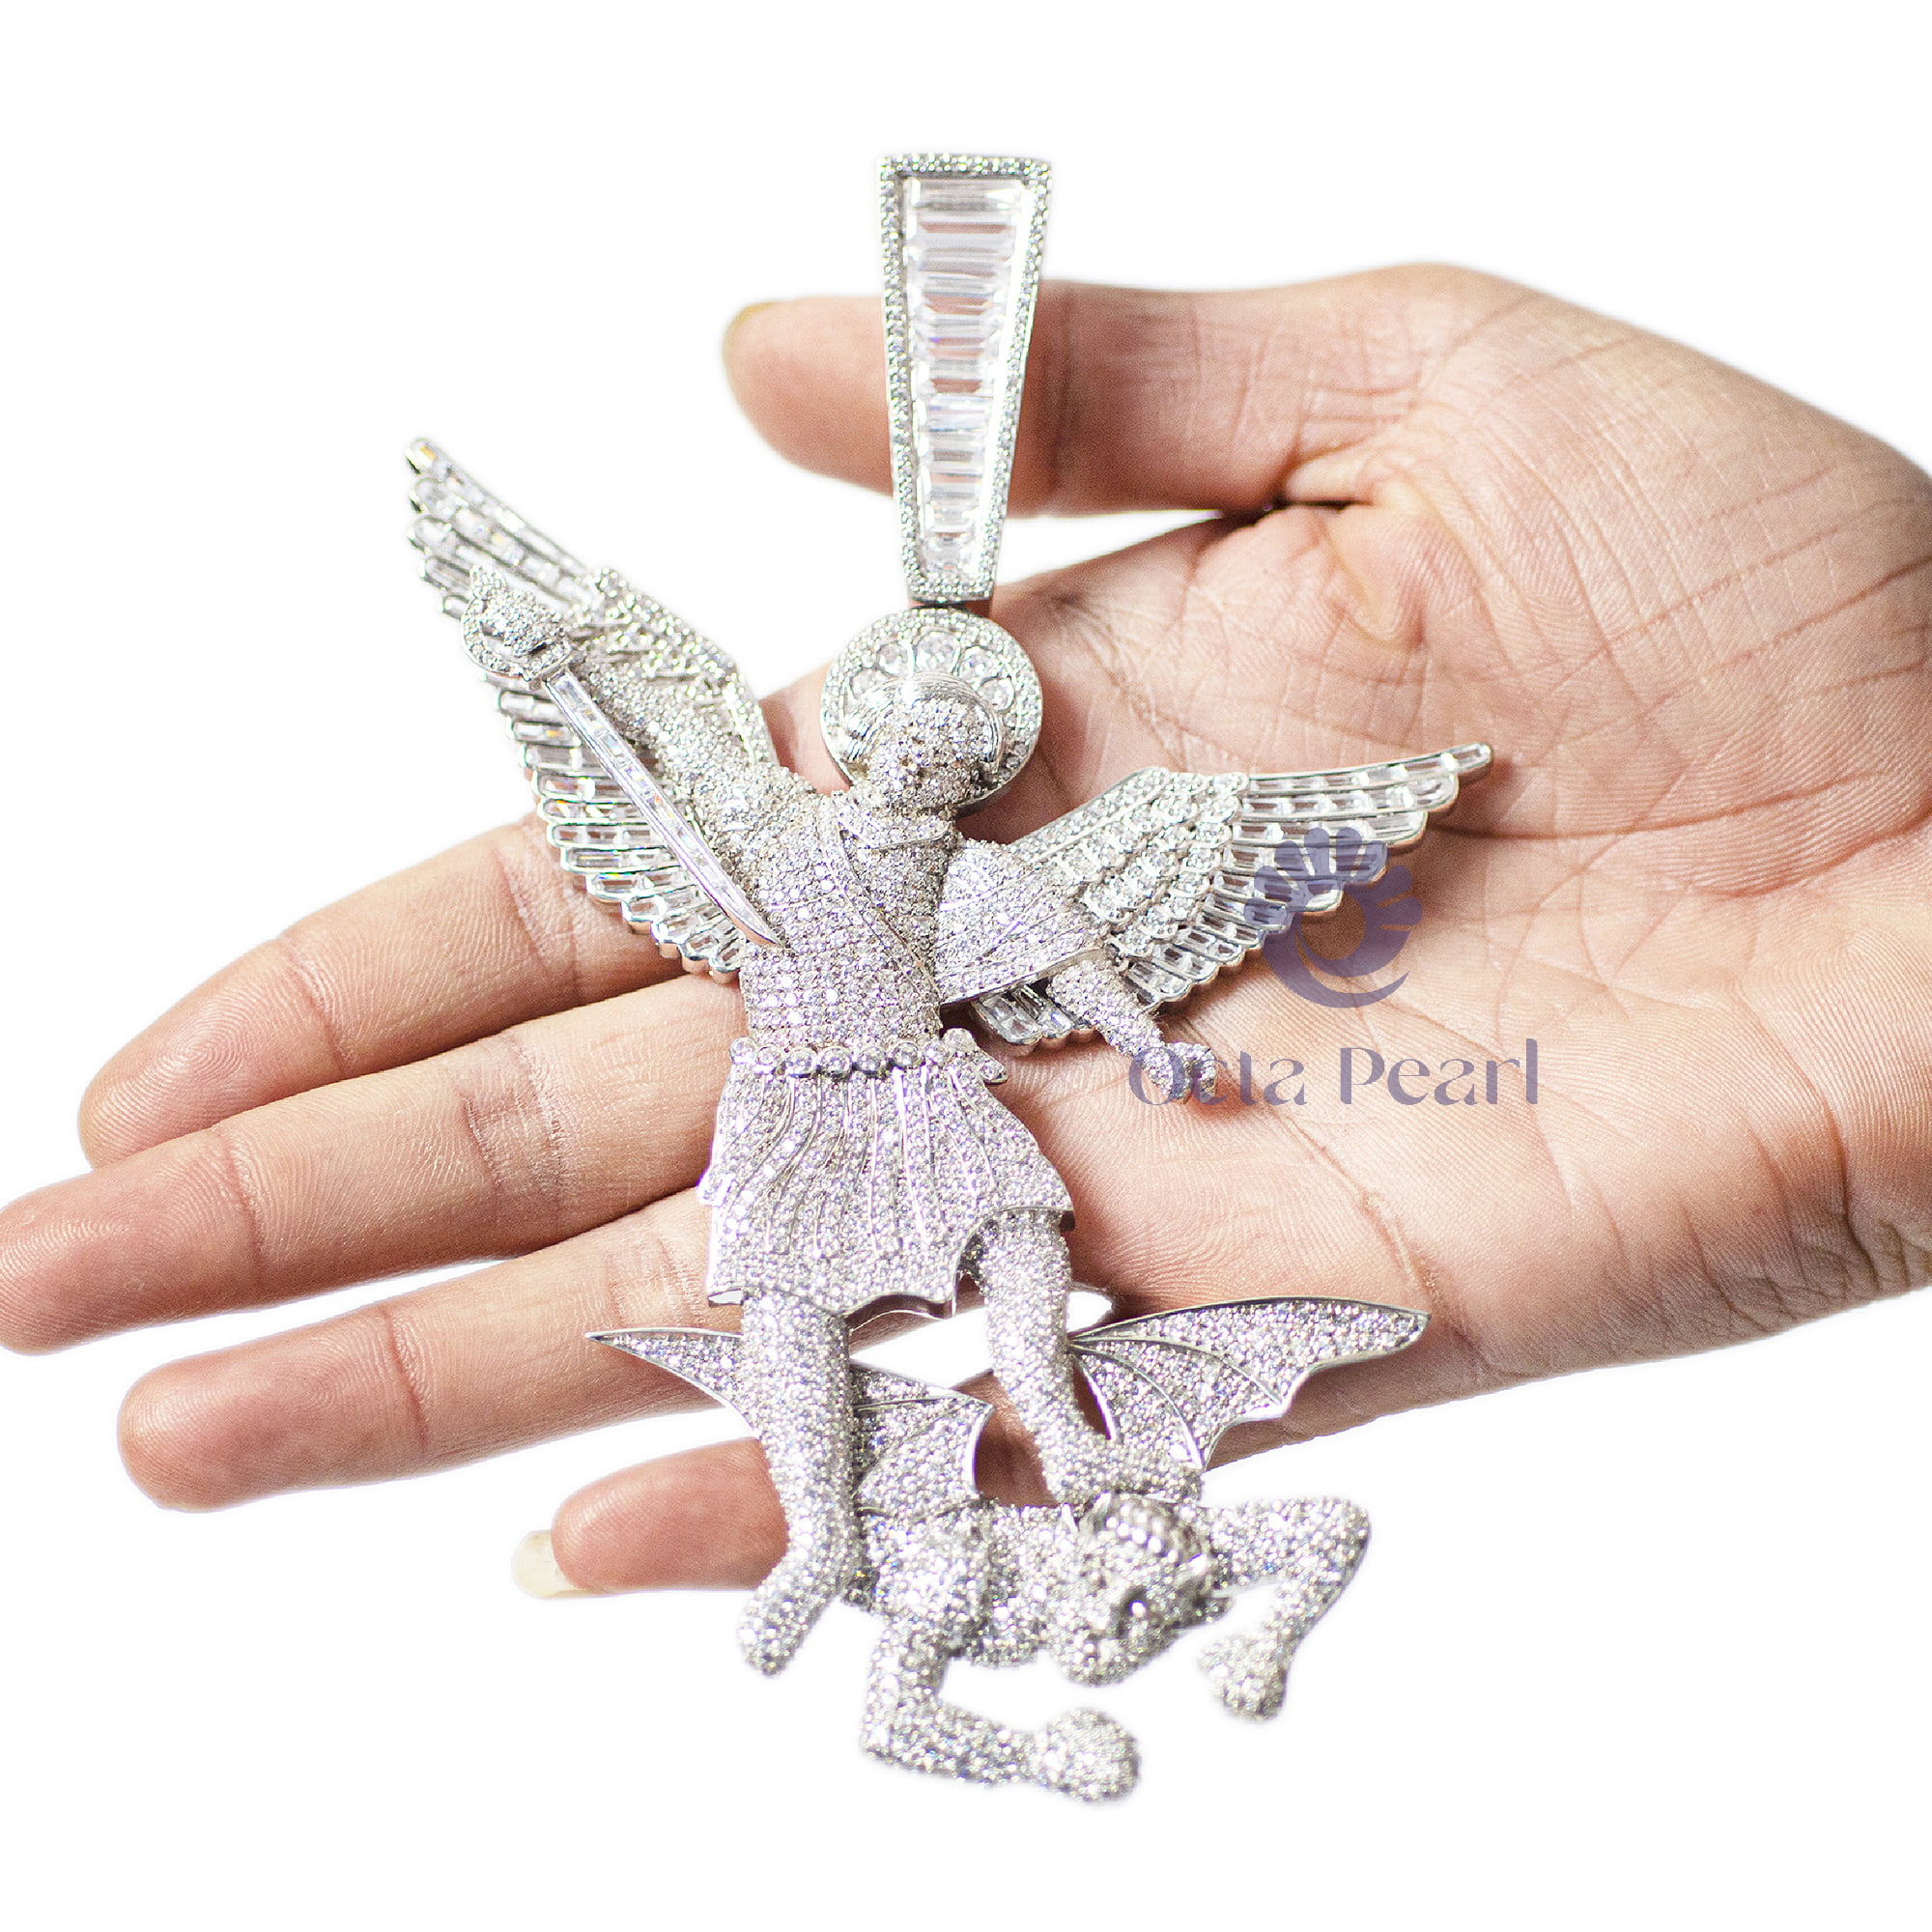 St Michael The Archangel With Micro Pave Set Cubic Zirconia Hip Hop 3D Pendant For Men